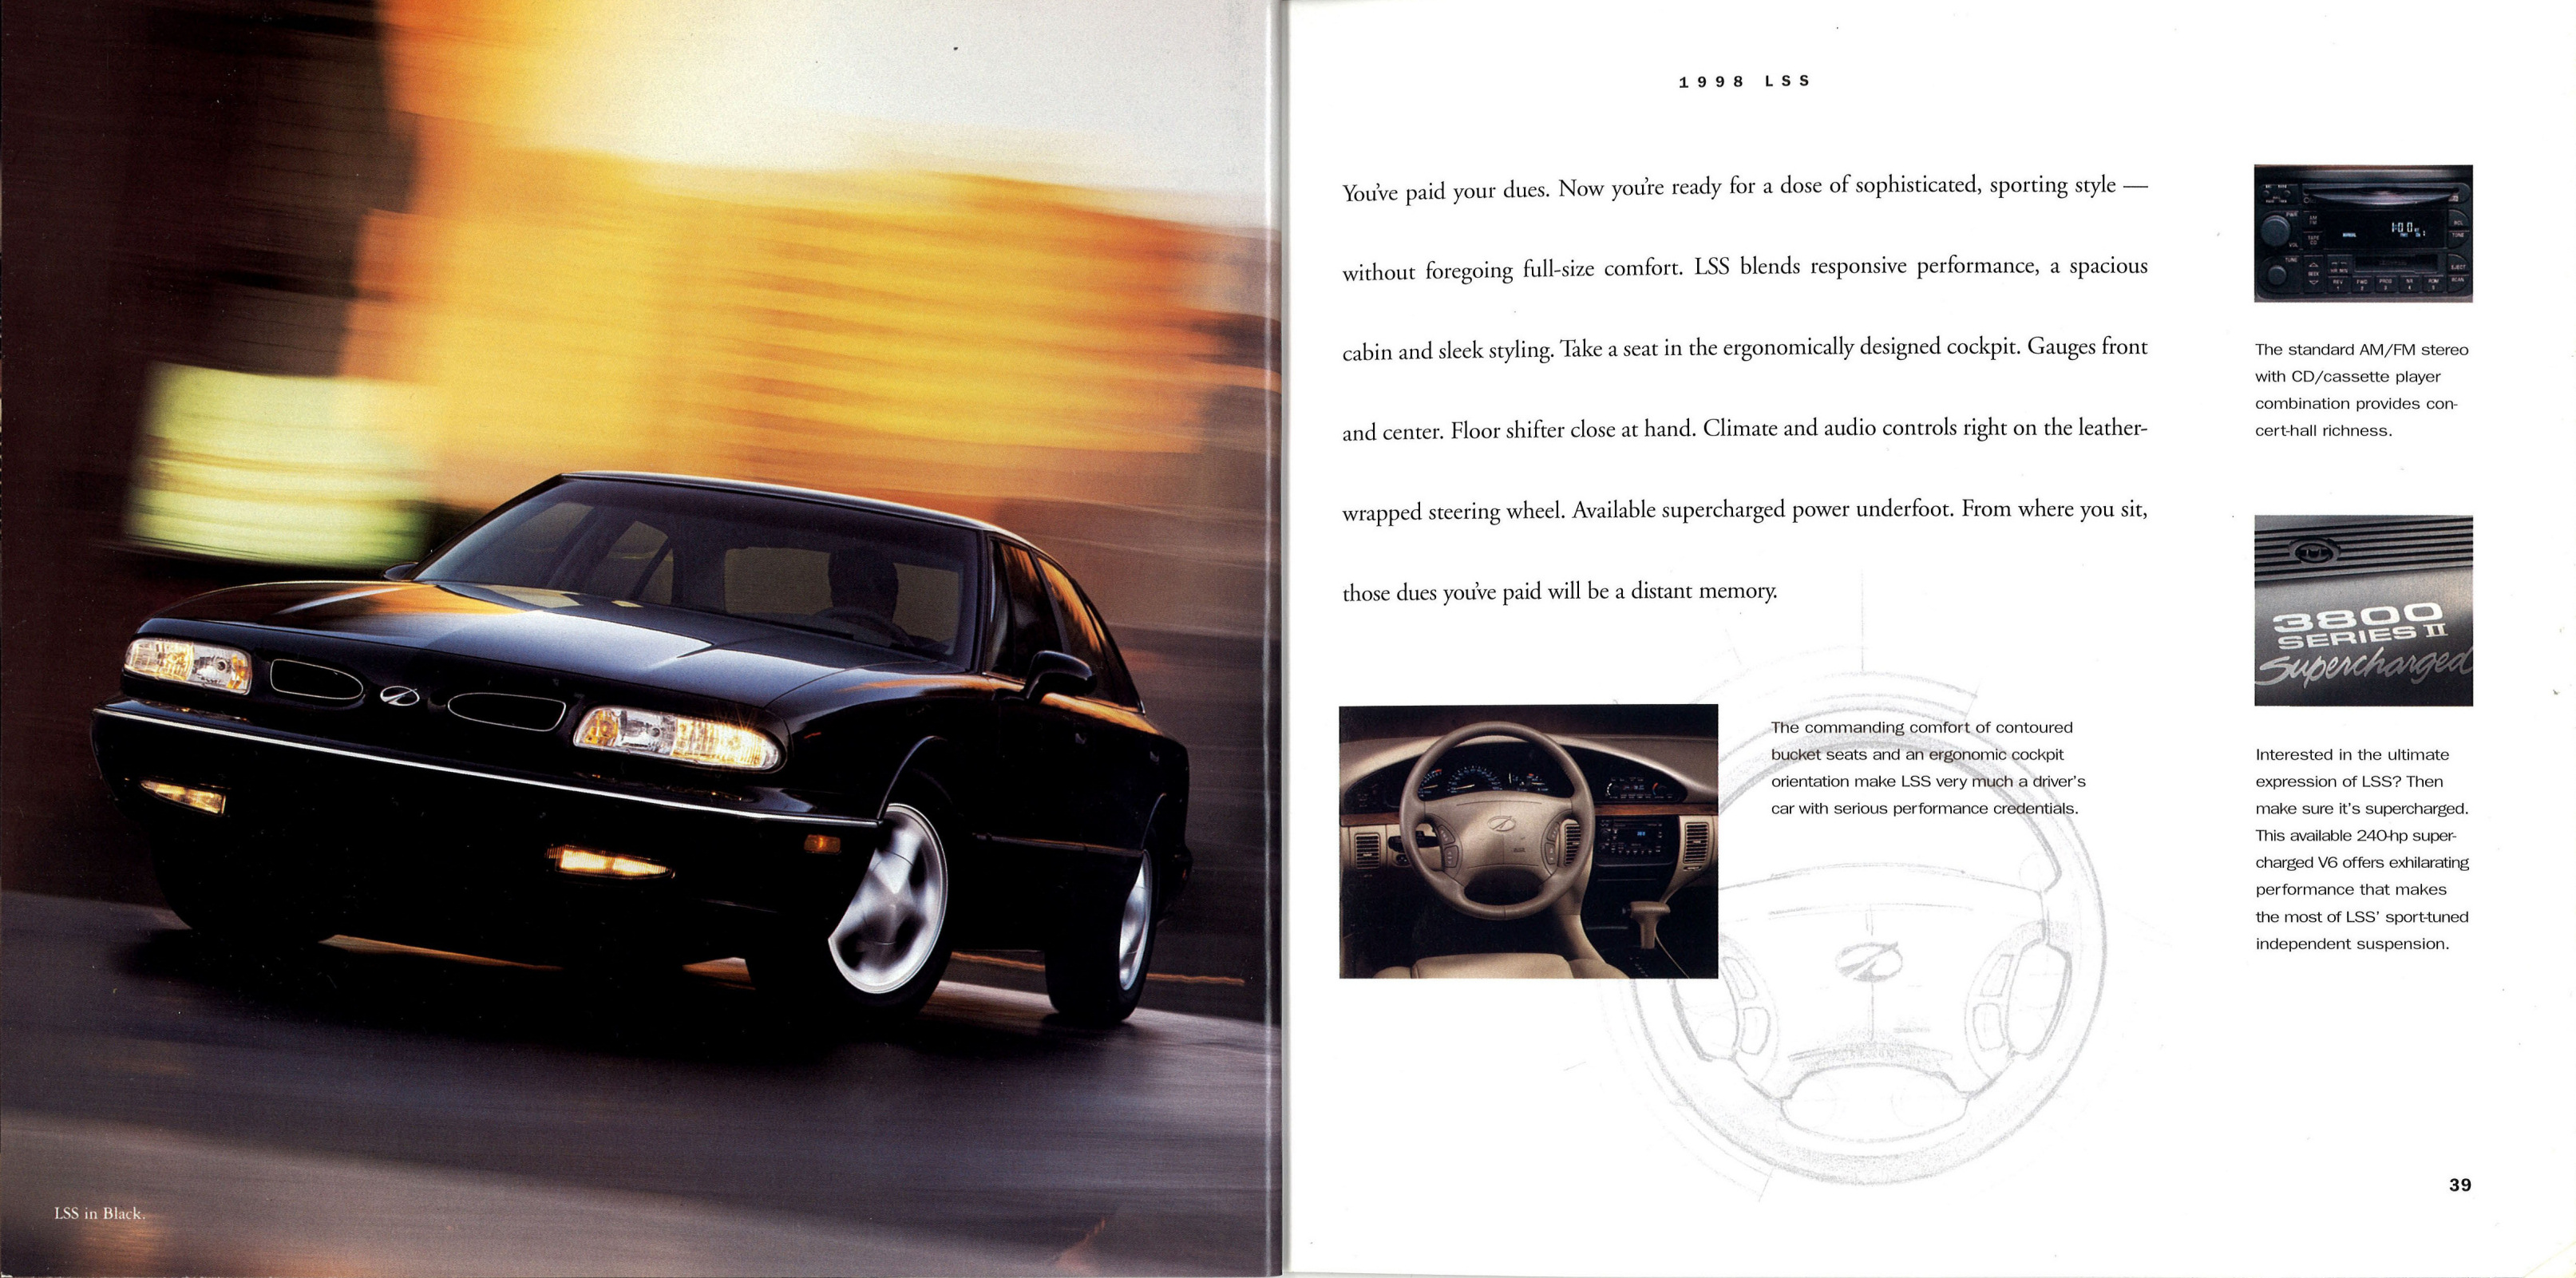 1998_Oldsmobile_Full_Line_Prestige-38-39